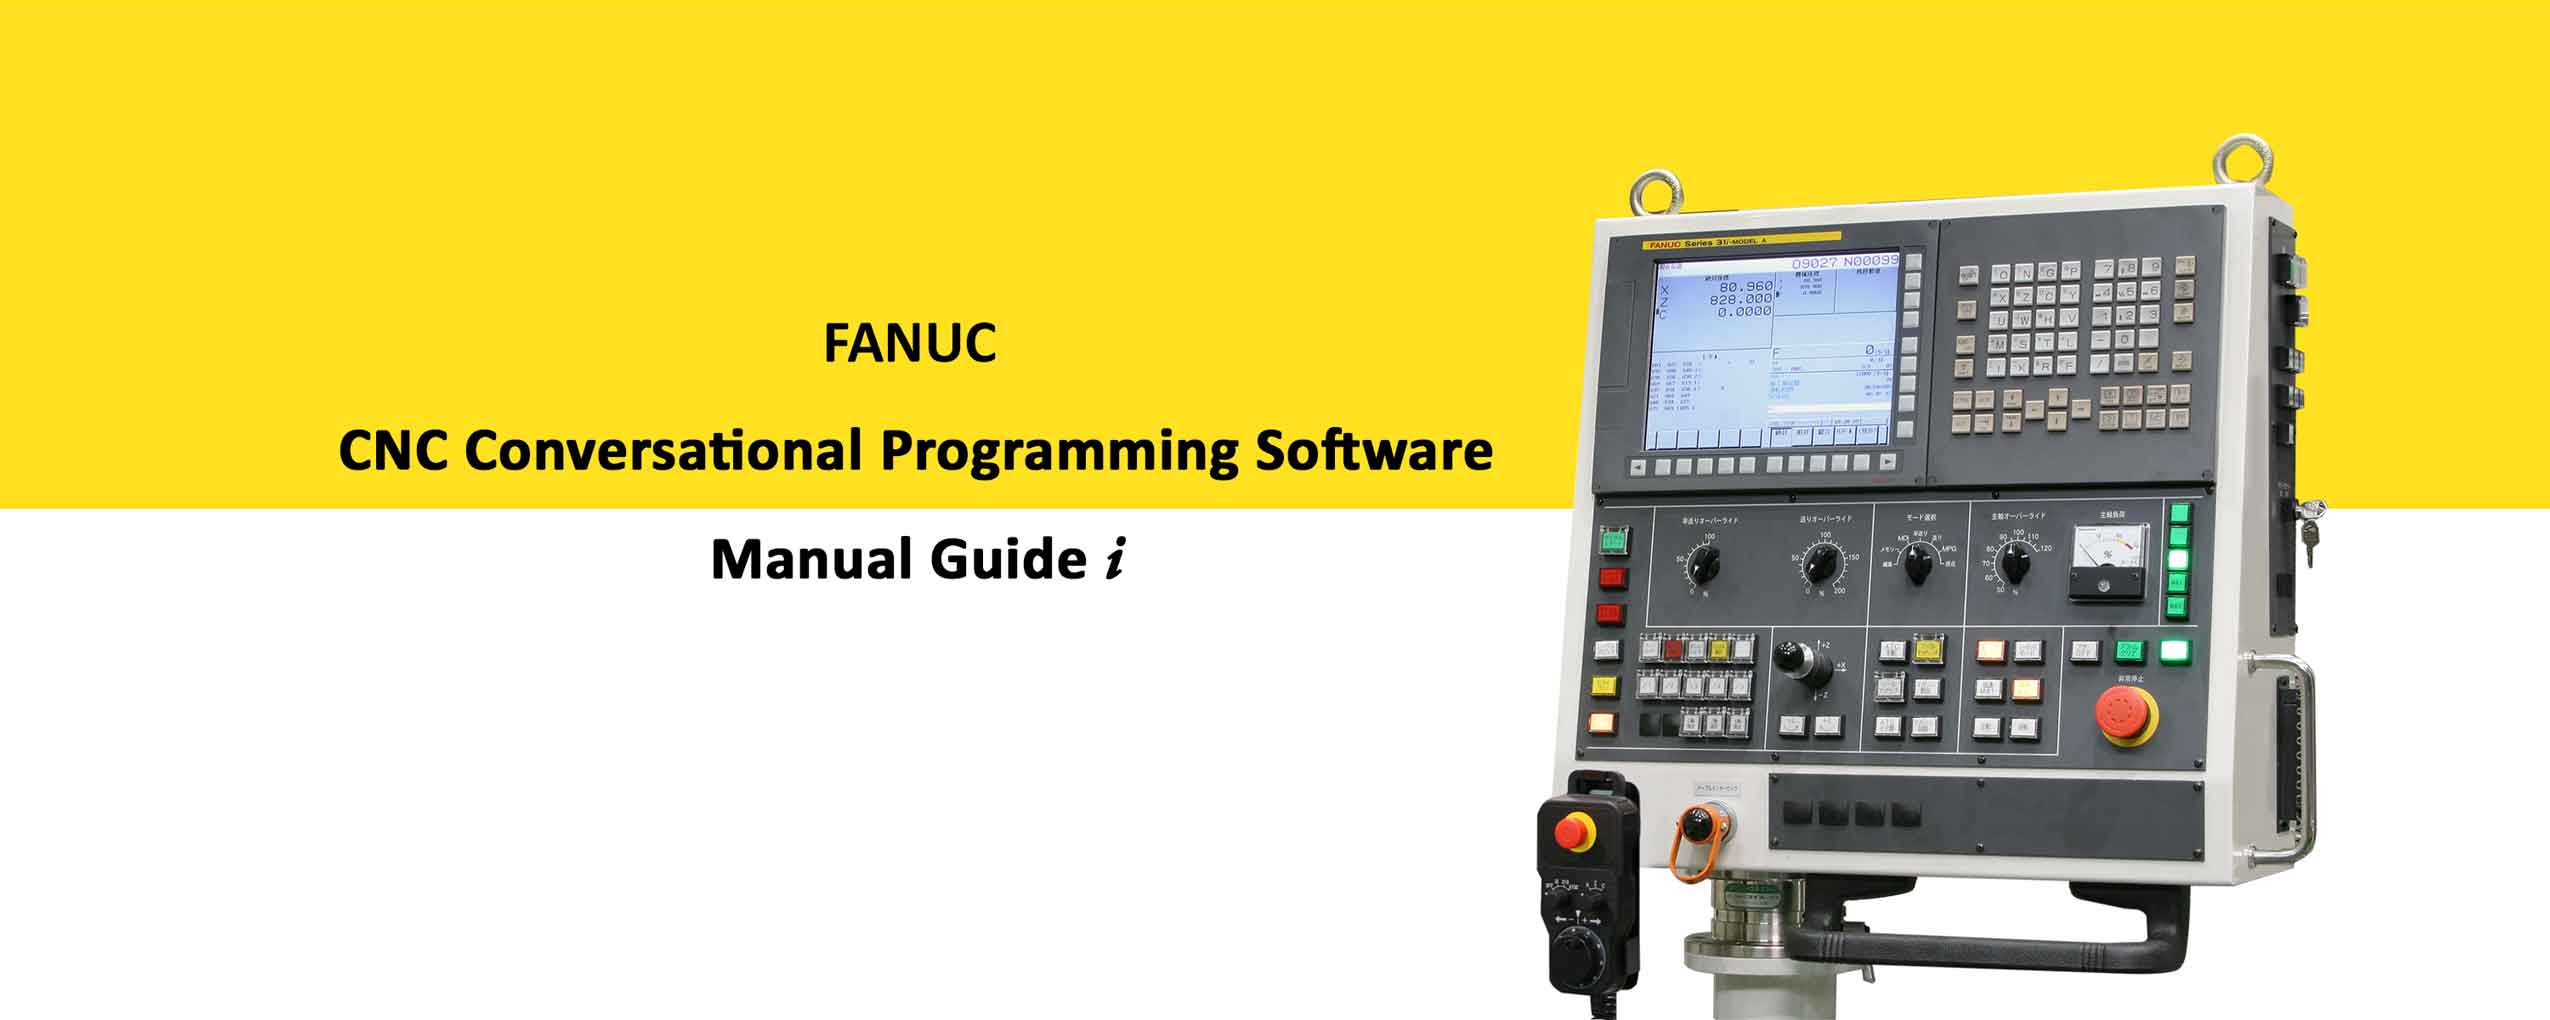 Fanuc Manual Guide I